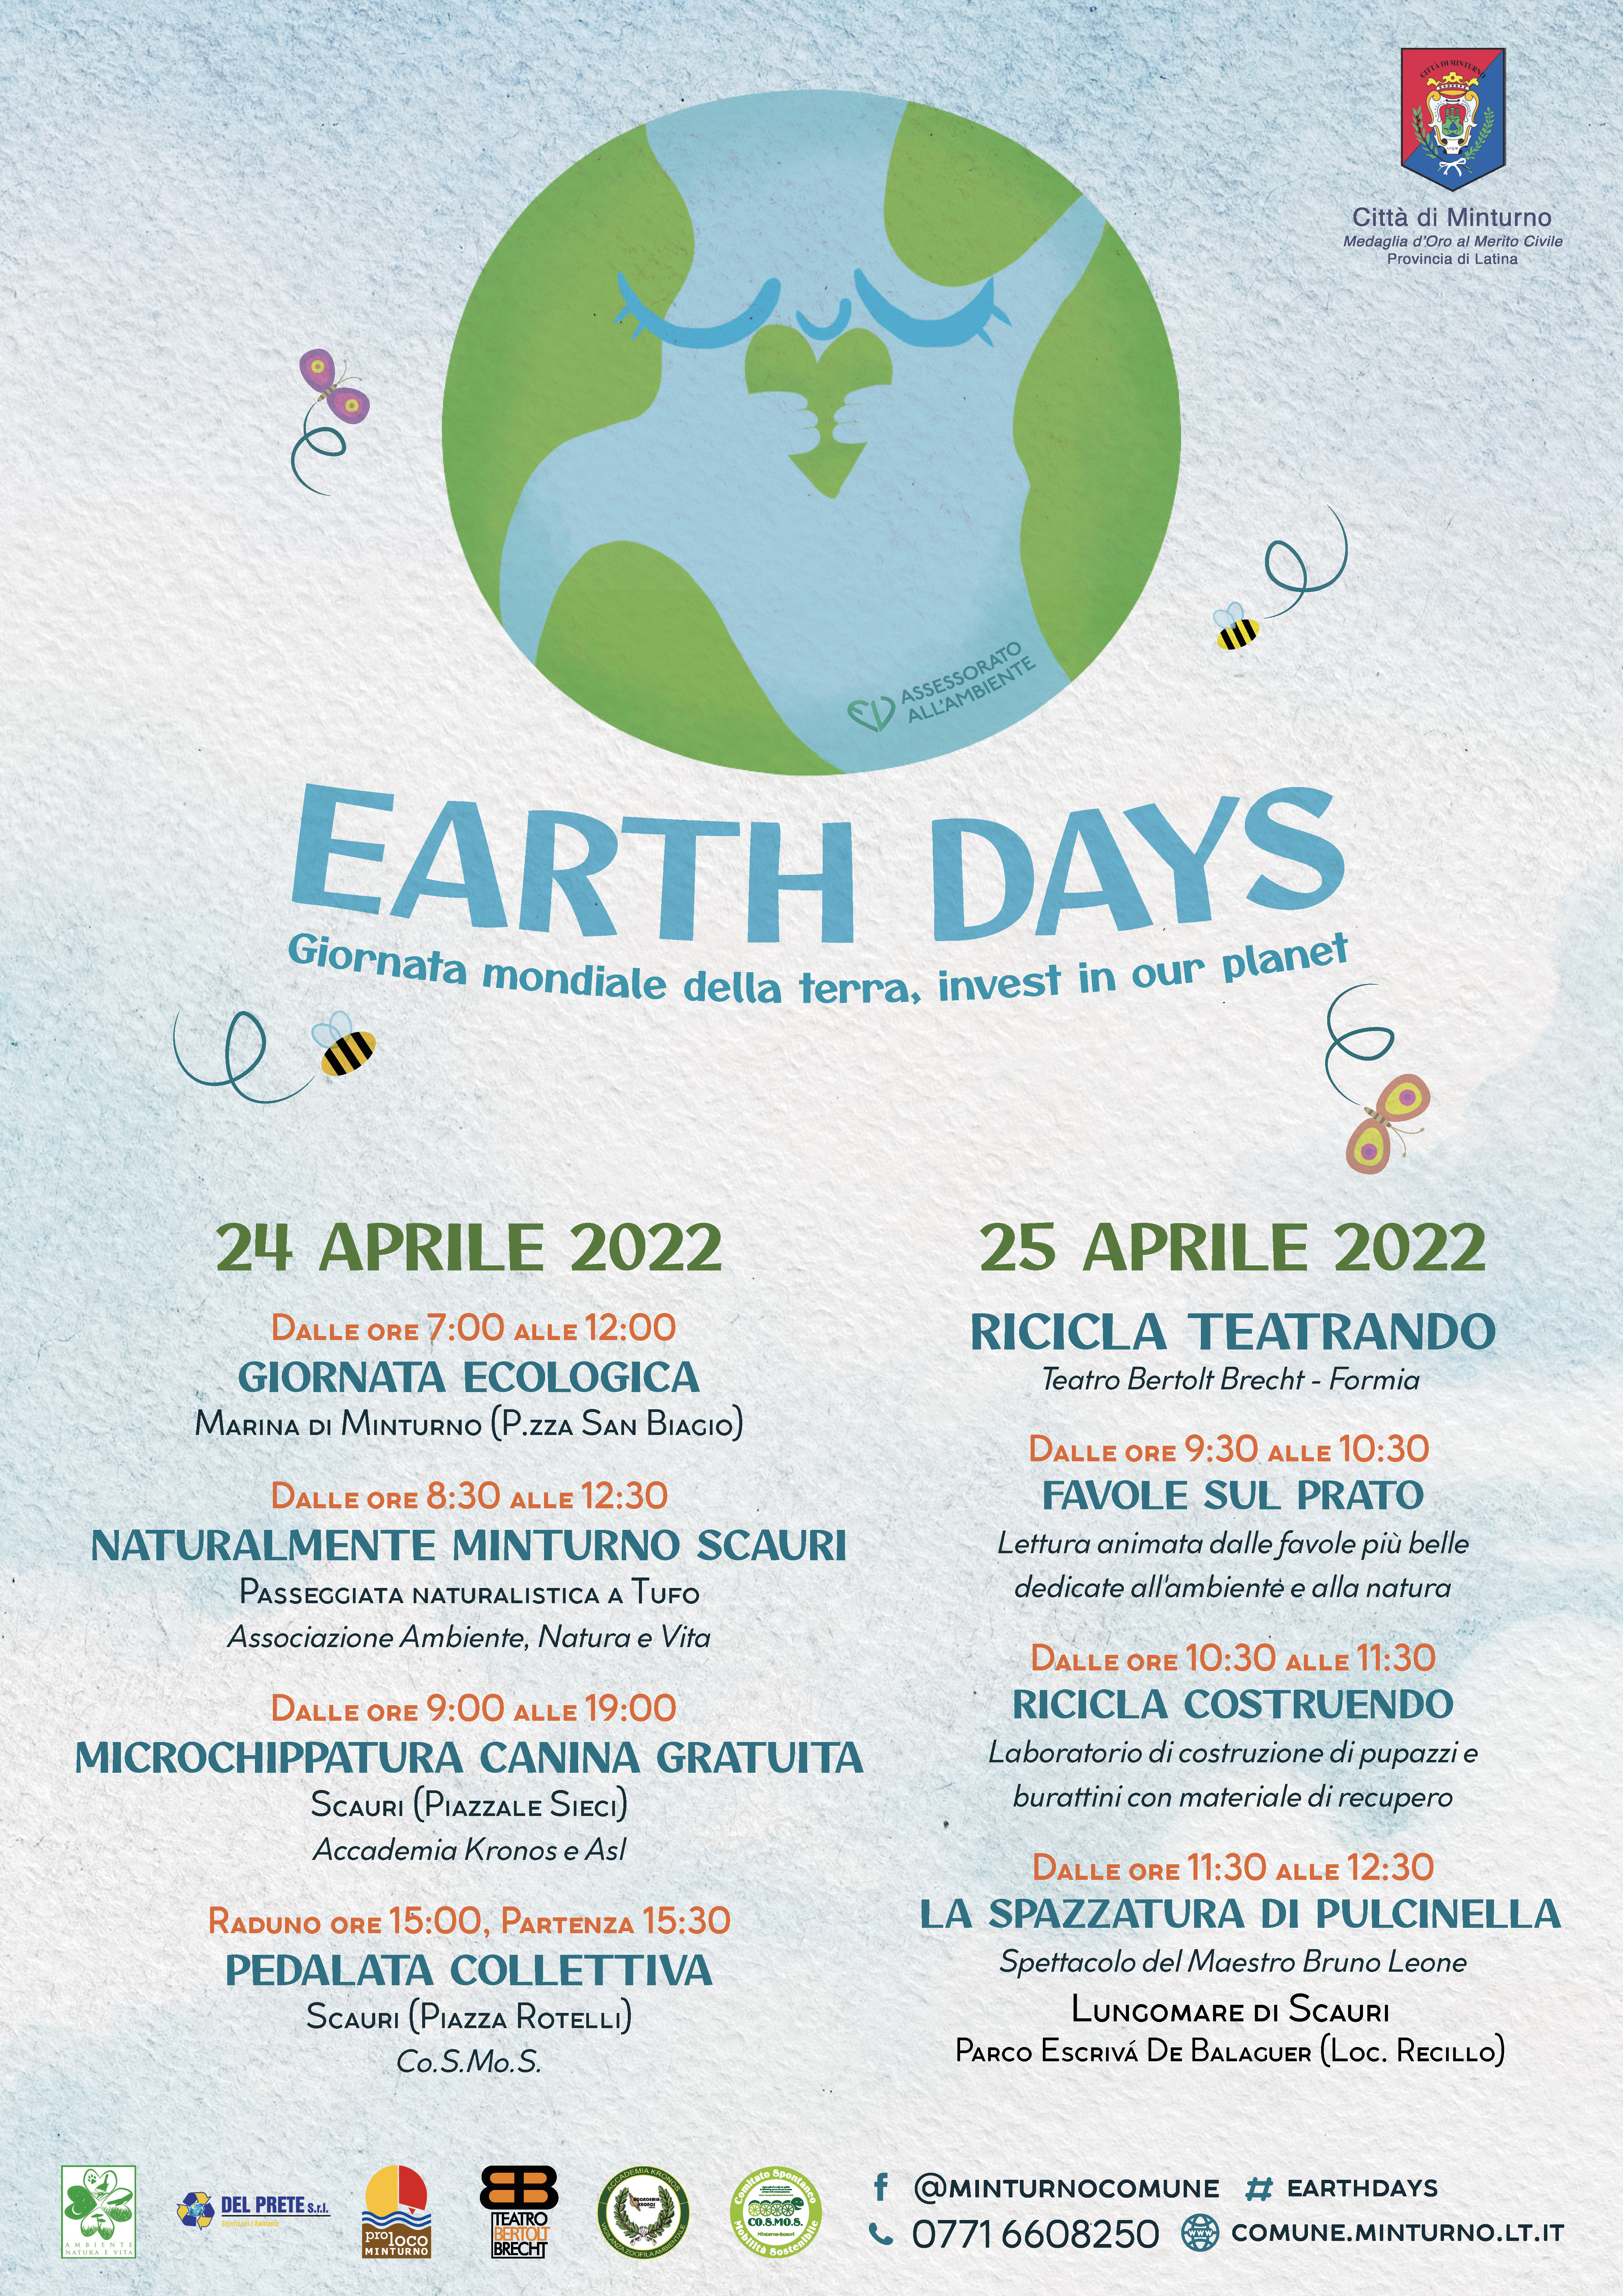 Earth Day - Giornata mondiale della Terra - Dal 22 al 25 aprile appuntamenti a Minturno Scauri